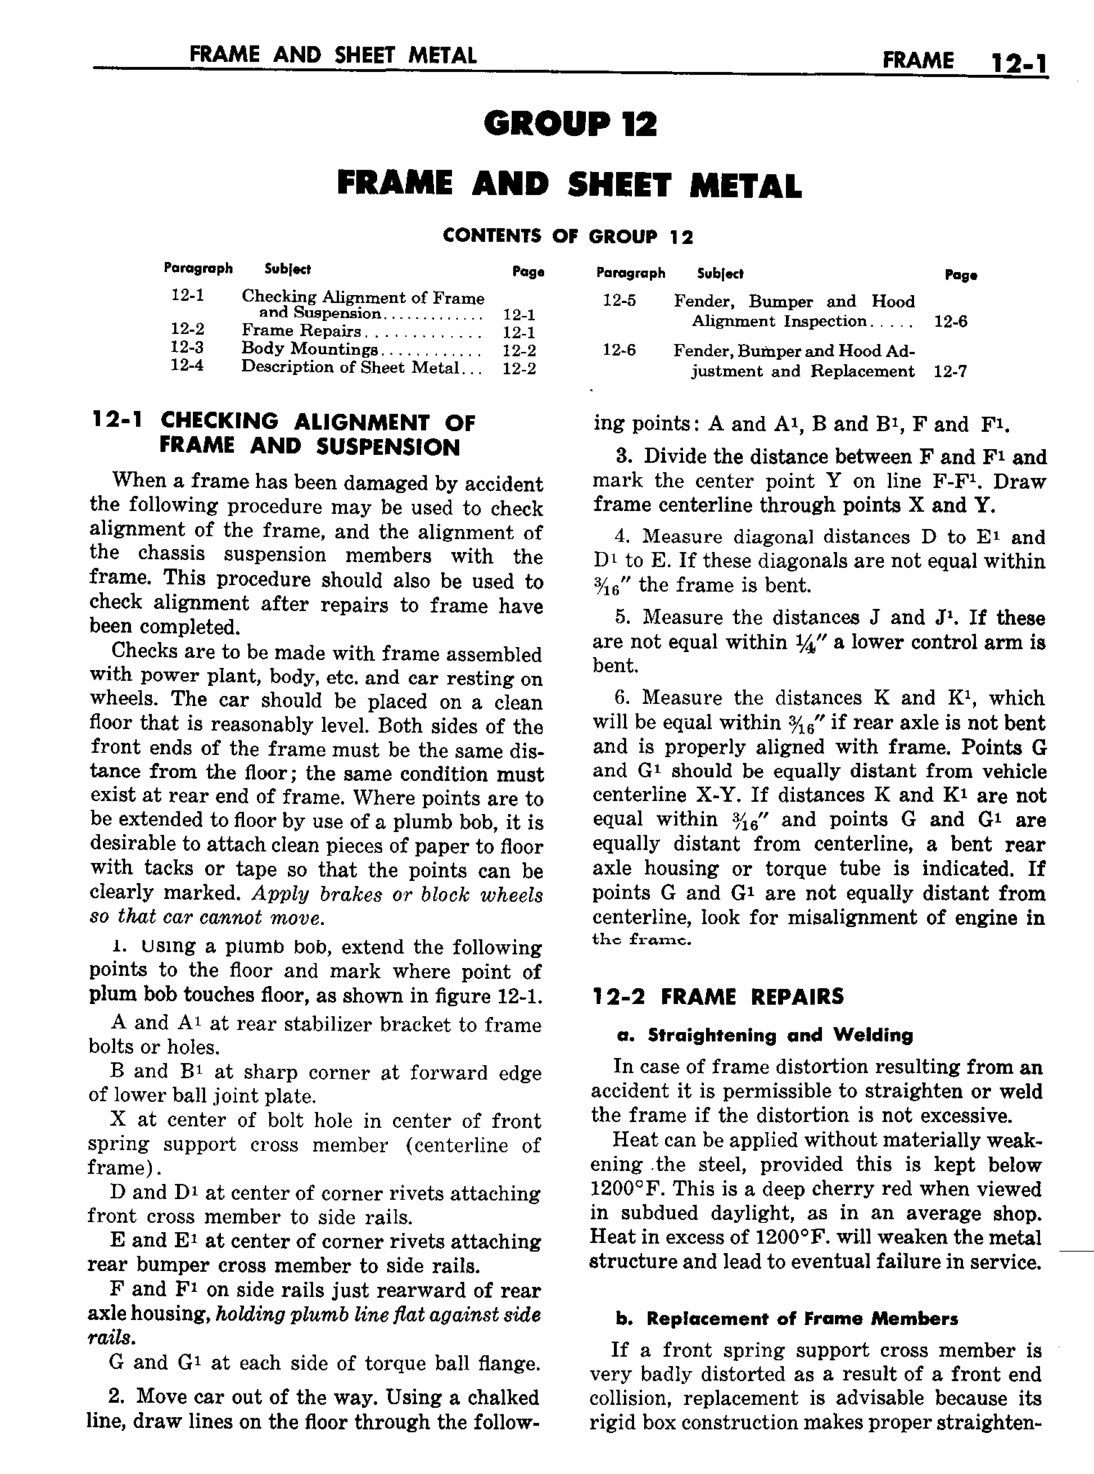 n_13 1959 Buick Shop Manual - Frame & Sheet Metal-001-001.jpg